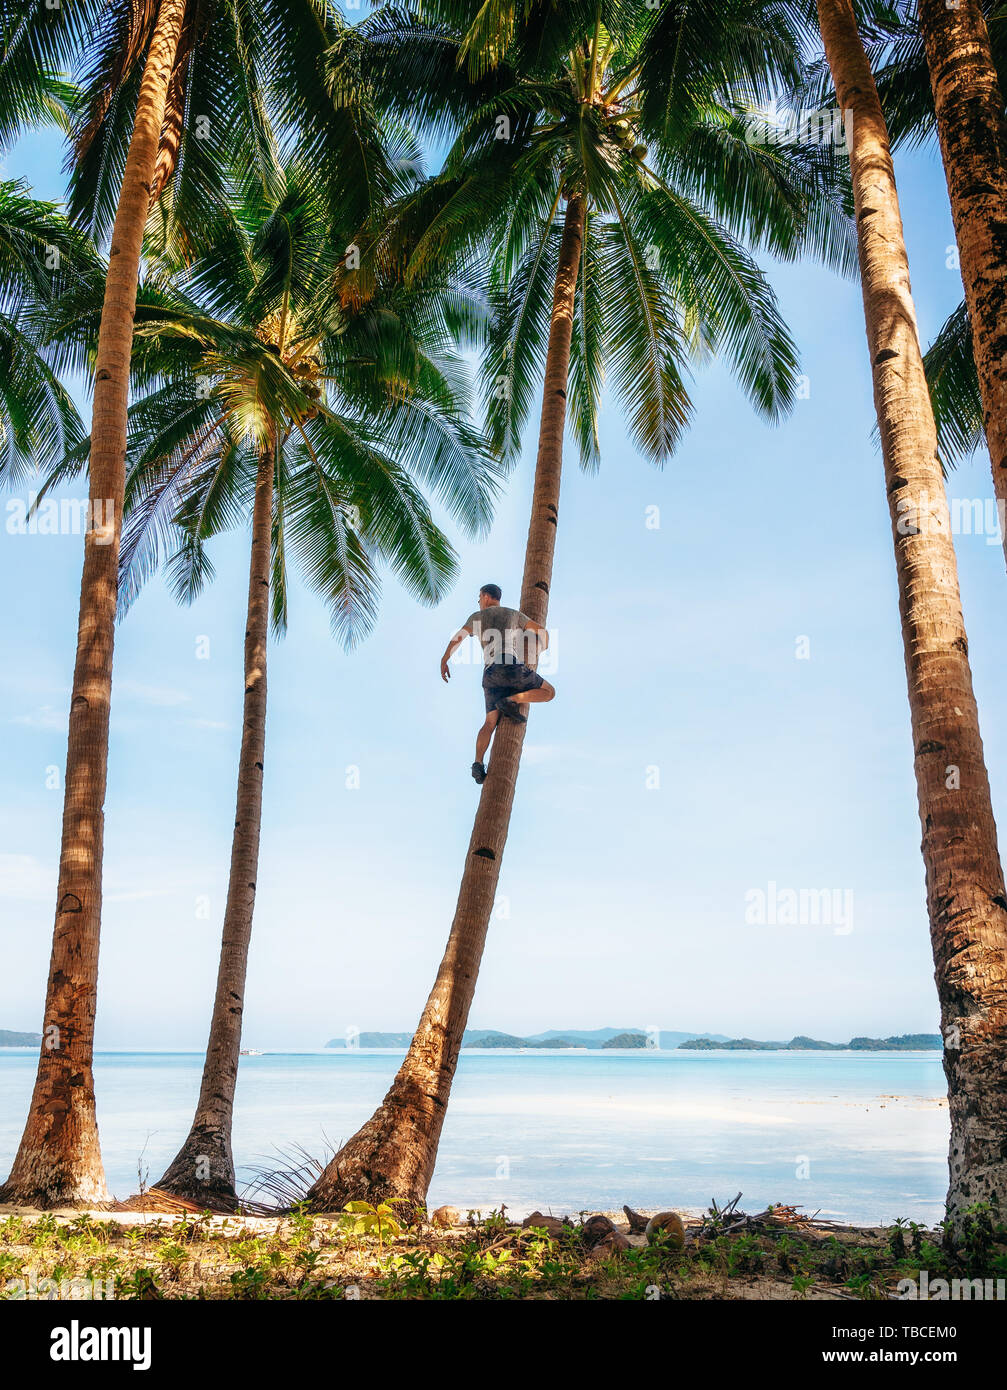 Mann sitzt auf der Palme und schaut in die Ferne. Abenteuer auf Urlaub in den Tropen. Stockfoto